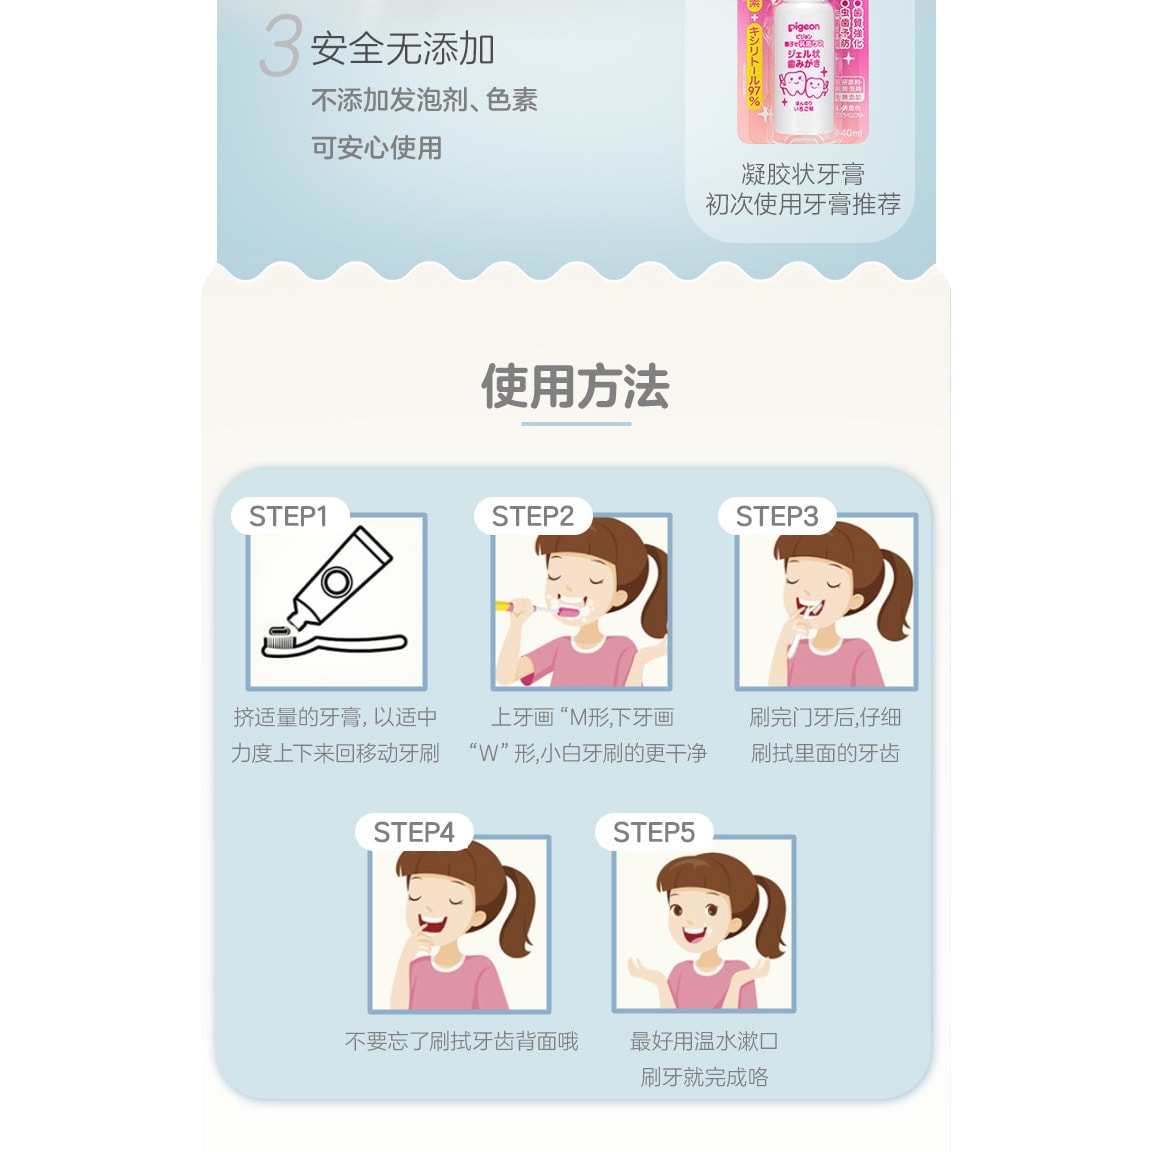 【日本直郵】PIGEON貝親 木糖醇兒童啫咖哩牙膏6月+ 嬰兒寶寶固齒可吞嚥牙膏40ml 草莓口味